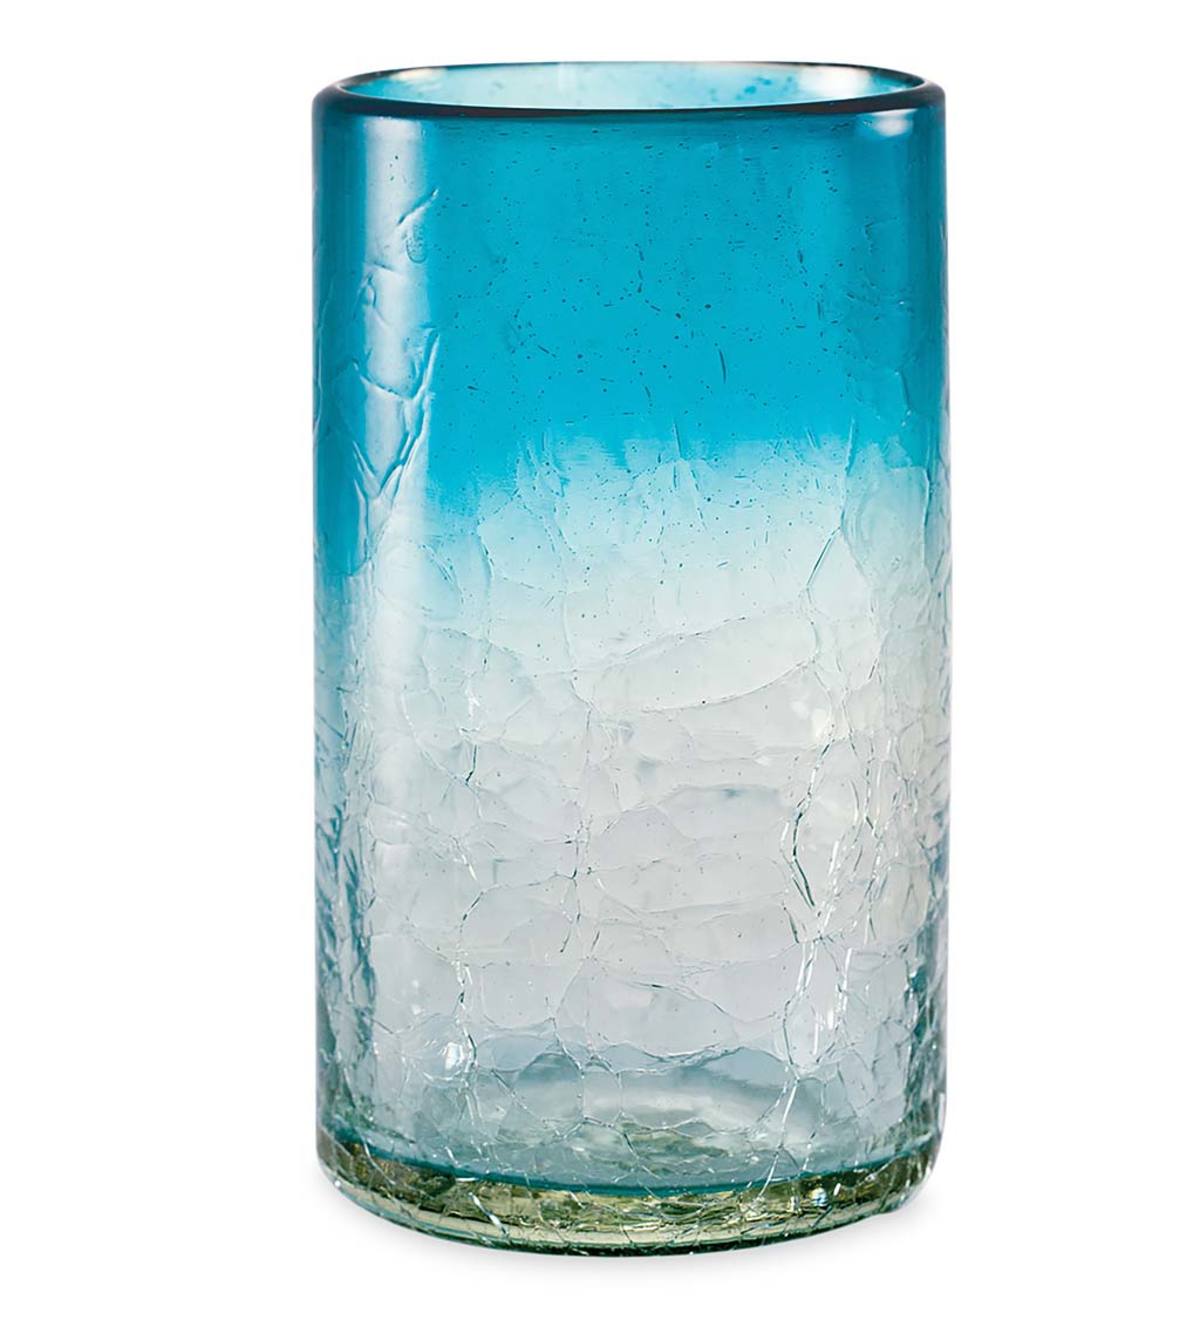 Maya Recycled Pint Glass - Aqua